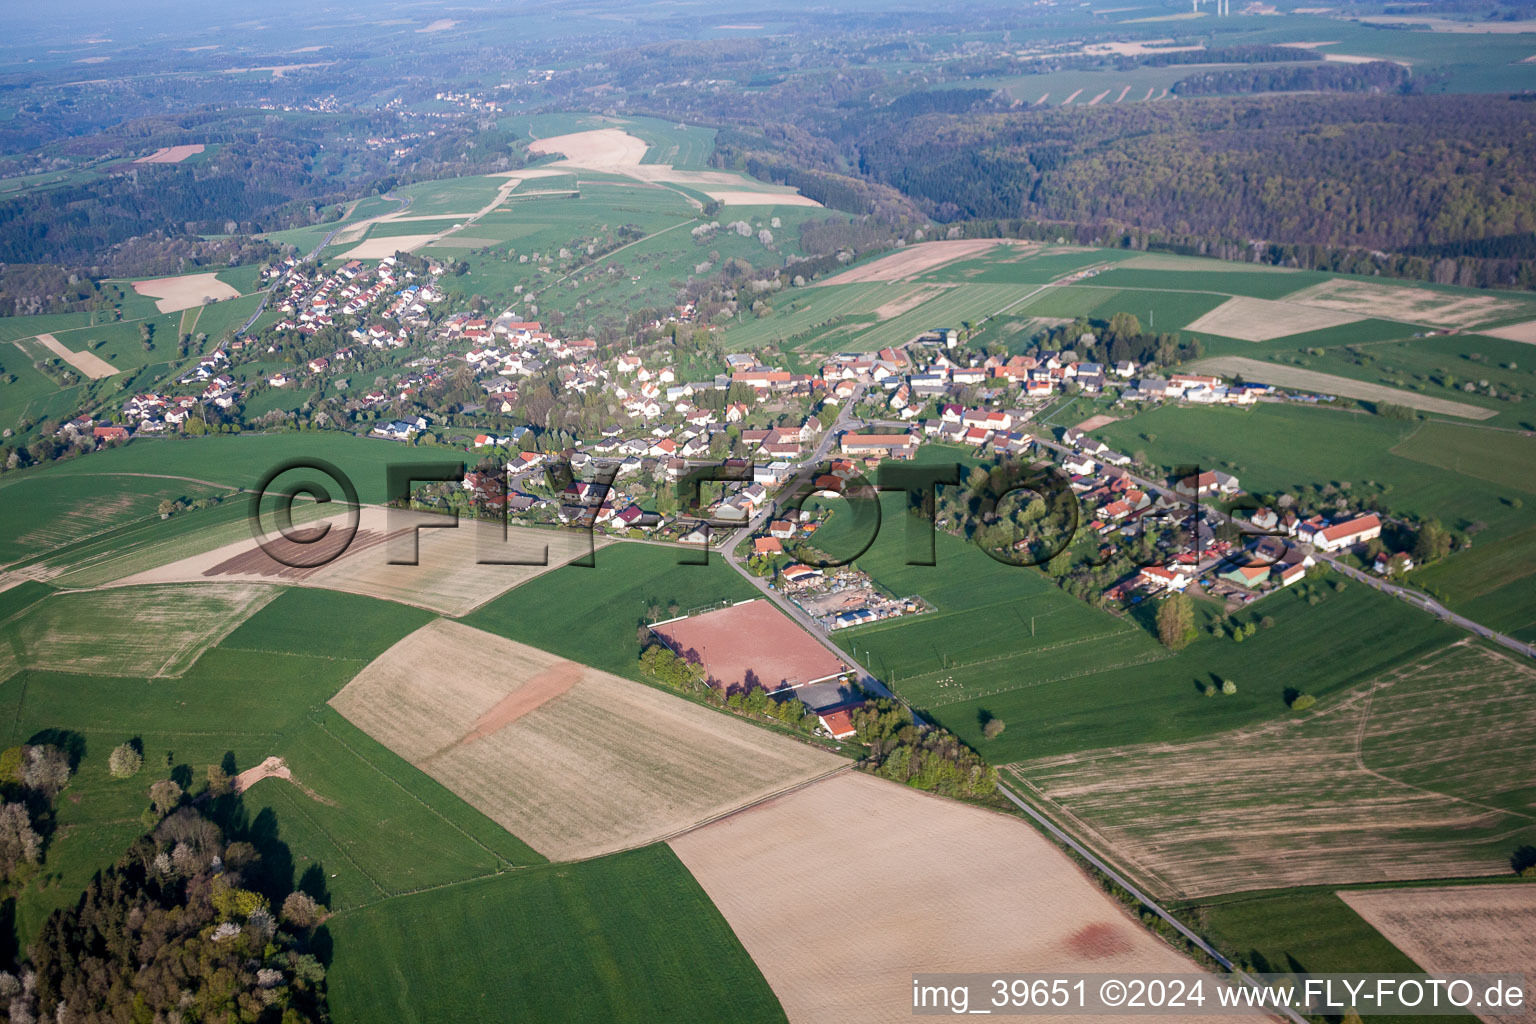 Vue aérienne de Champs agricoles et surfaces utilisables à Kröppen dans le département Rhénanie-Palatinat, Allemagne